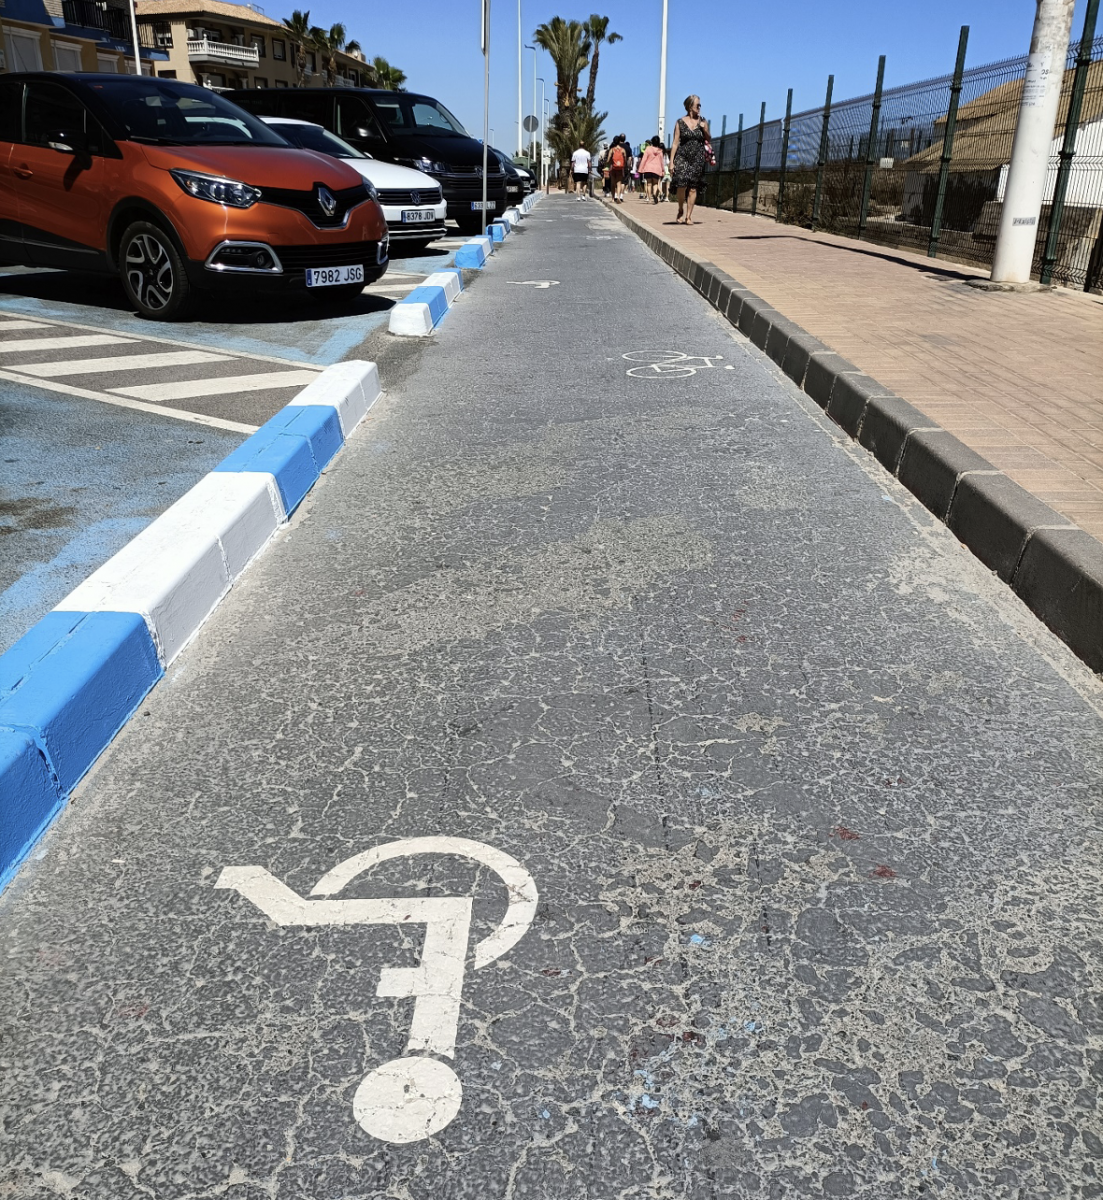 Pad in degelijk asfalt, met zowel het symbool van een fiets als van een rolstoeler.